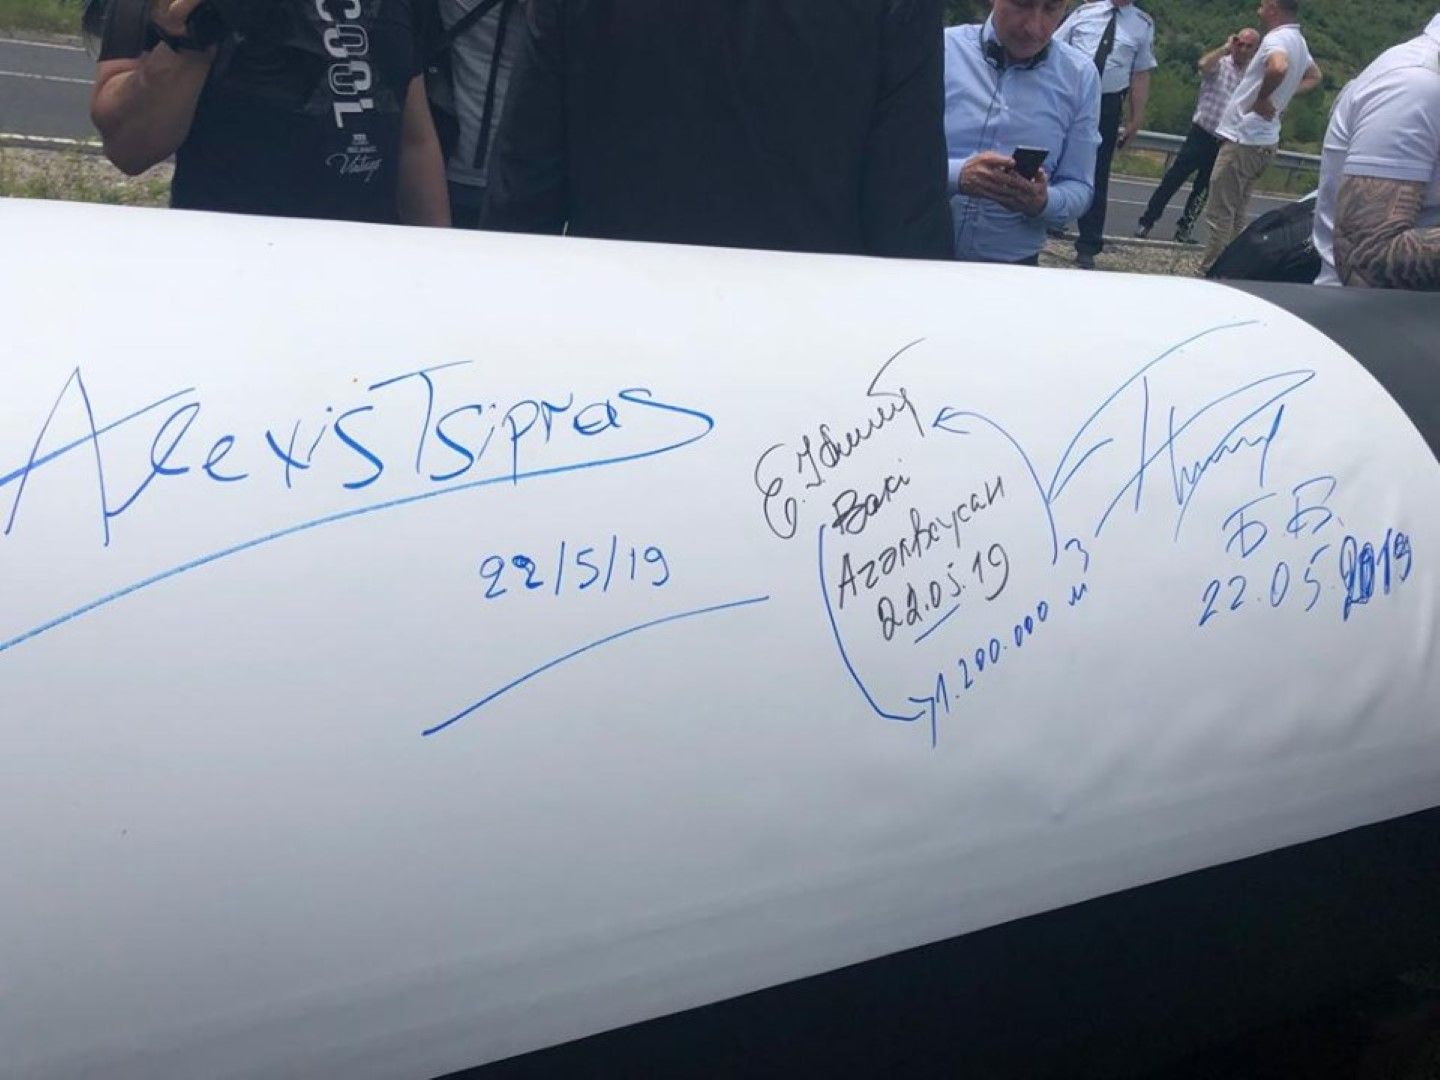 На 22 май 2019 г. премиерът Бойко Борисов и тогавашният гръцки премиер Алексис Ципрас се подписаха върху тръба при първата копка на интерконектора